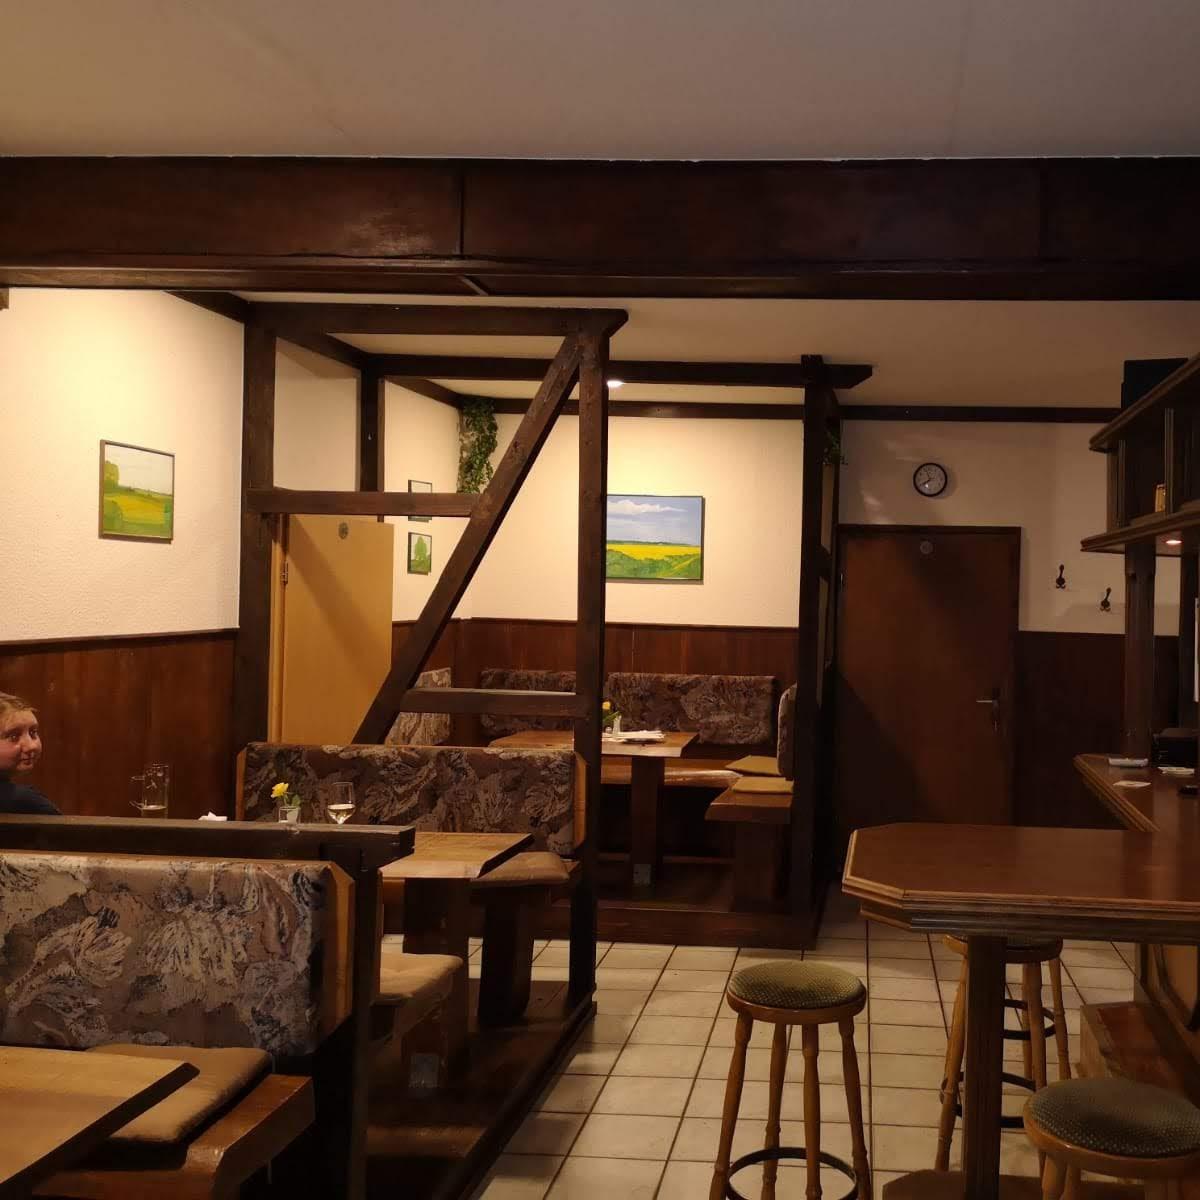 Restaurant "Gaststätte Zum Winkelkrug" in Demen